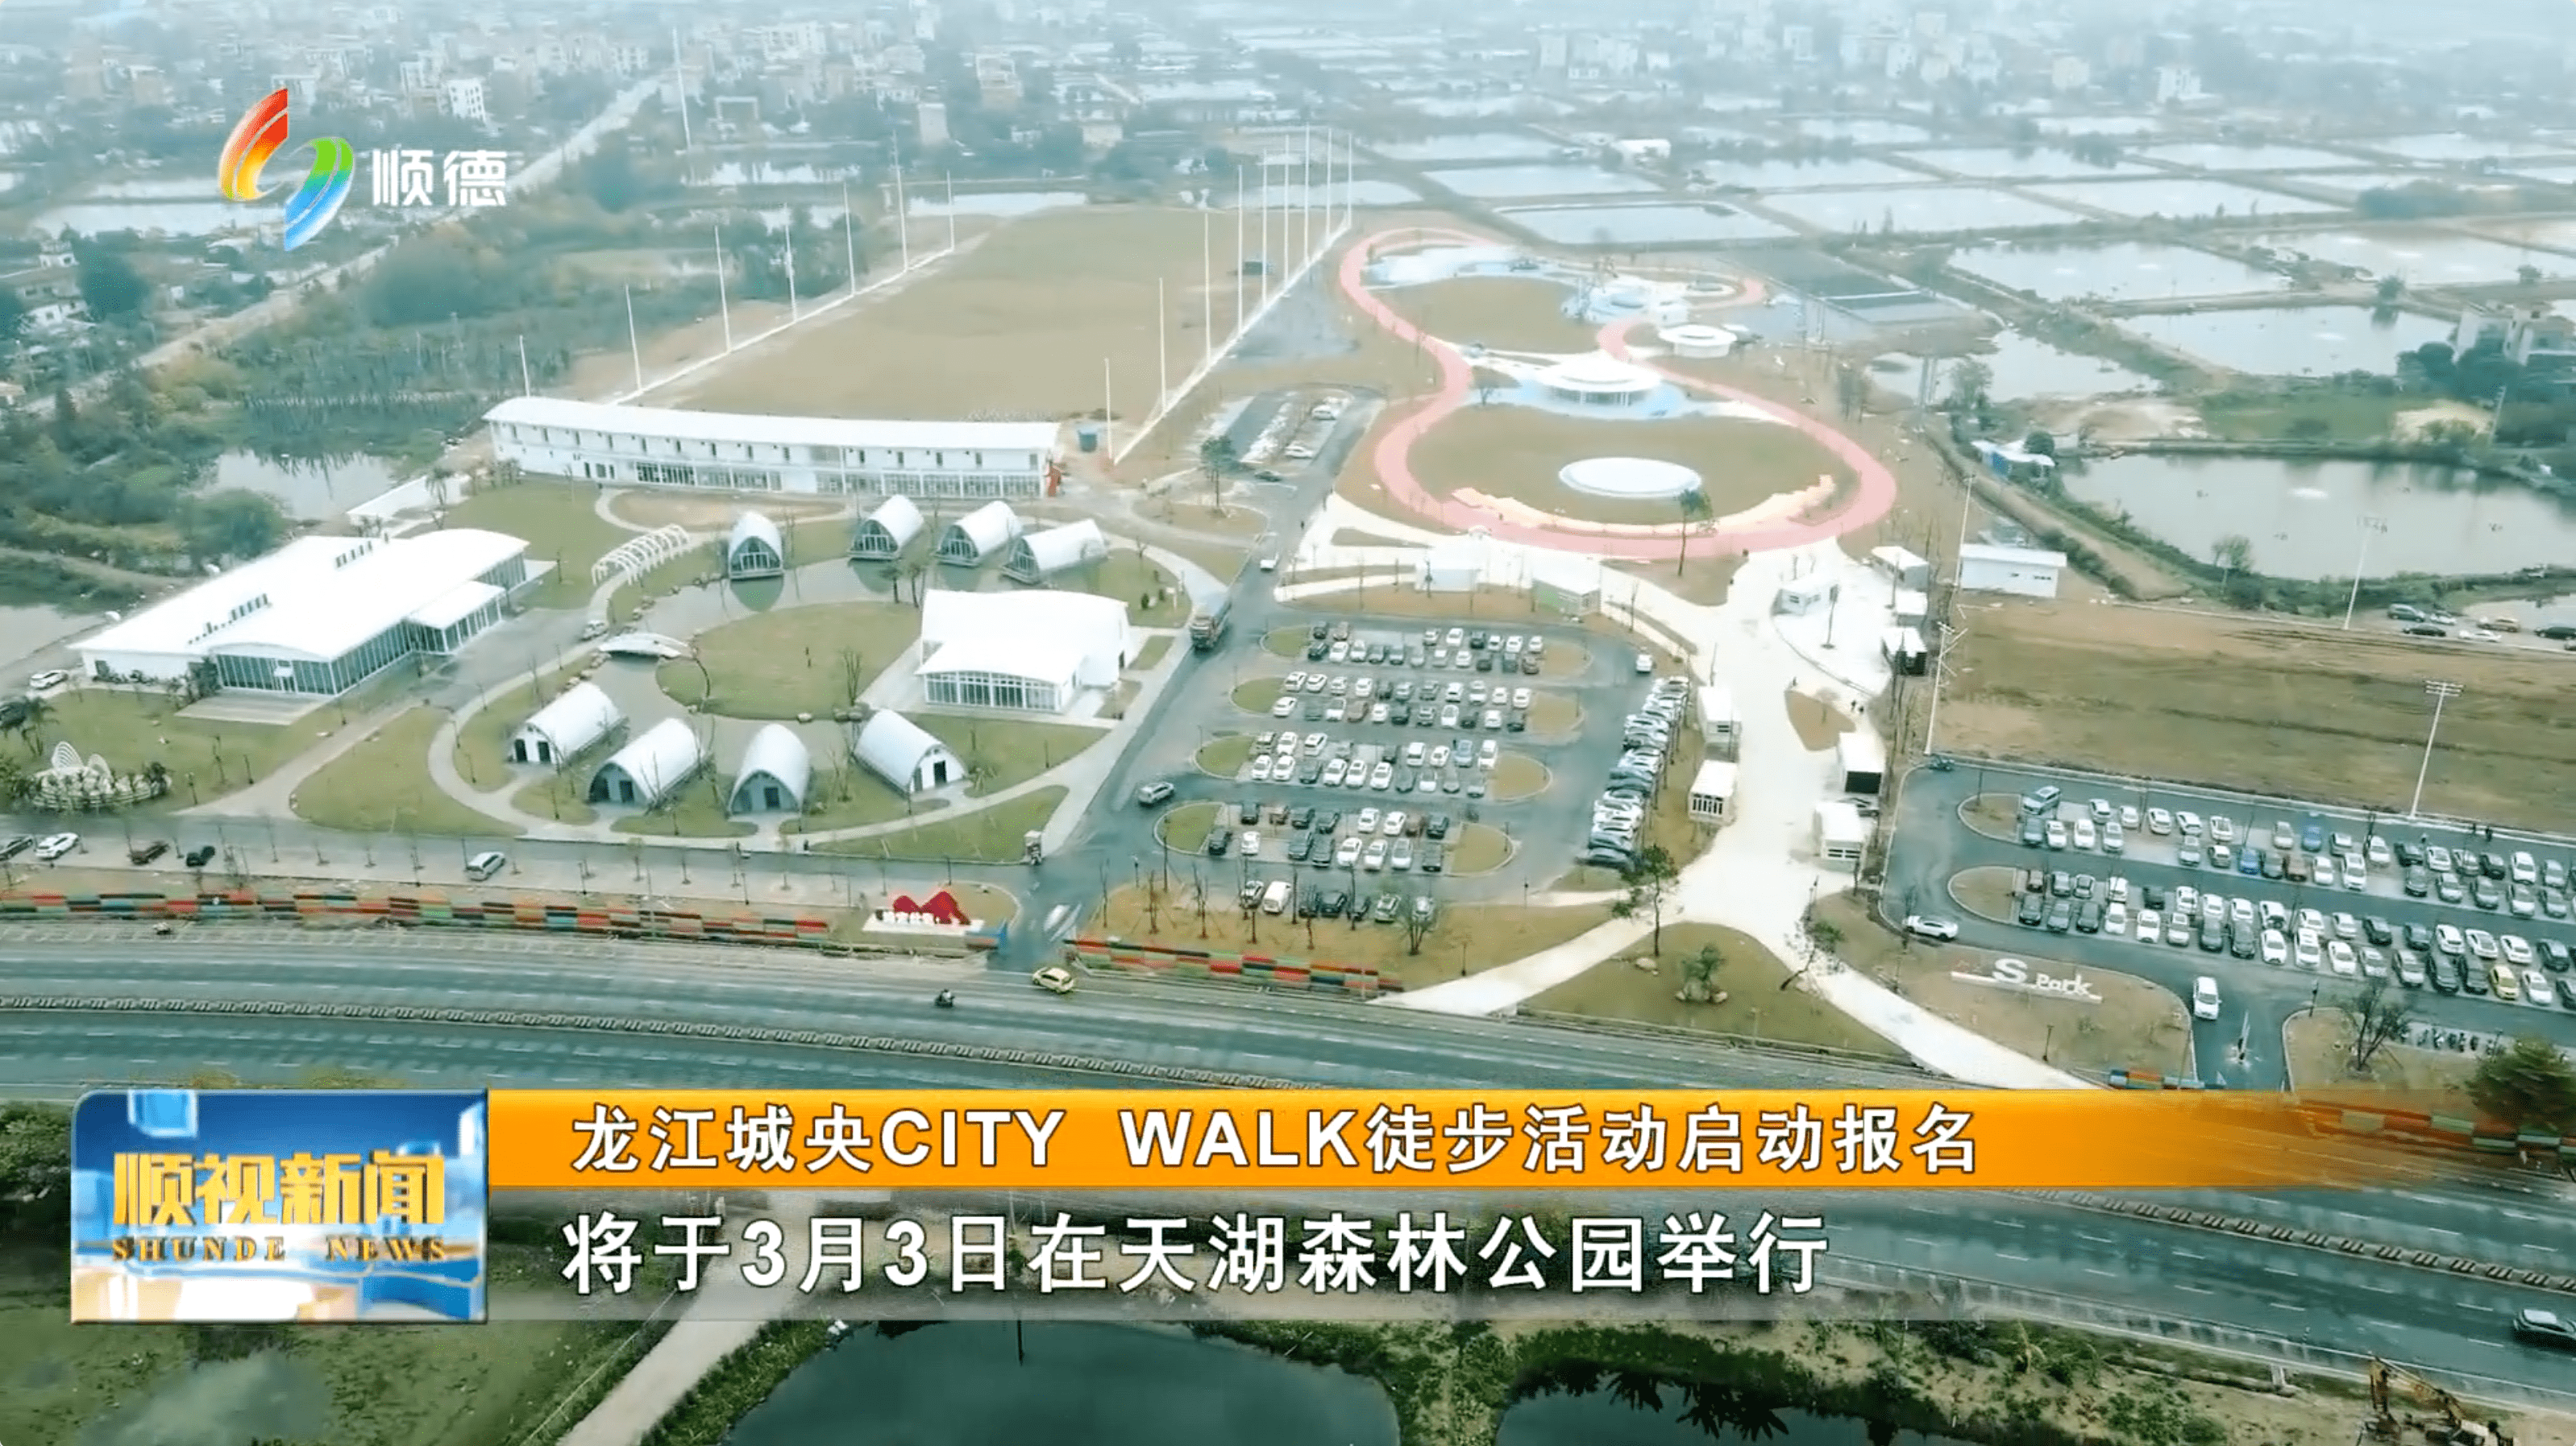 龙江城央CITY WALK徒步活动启动报名